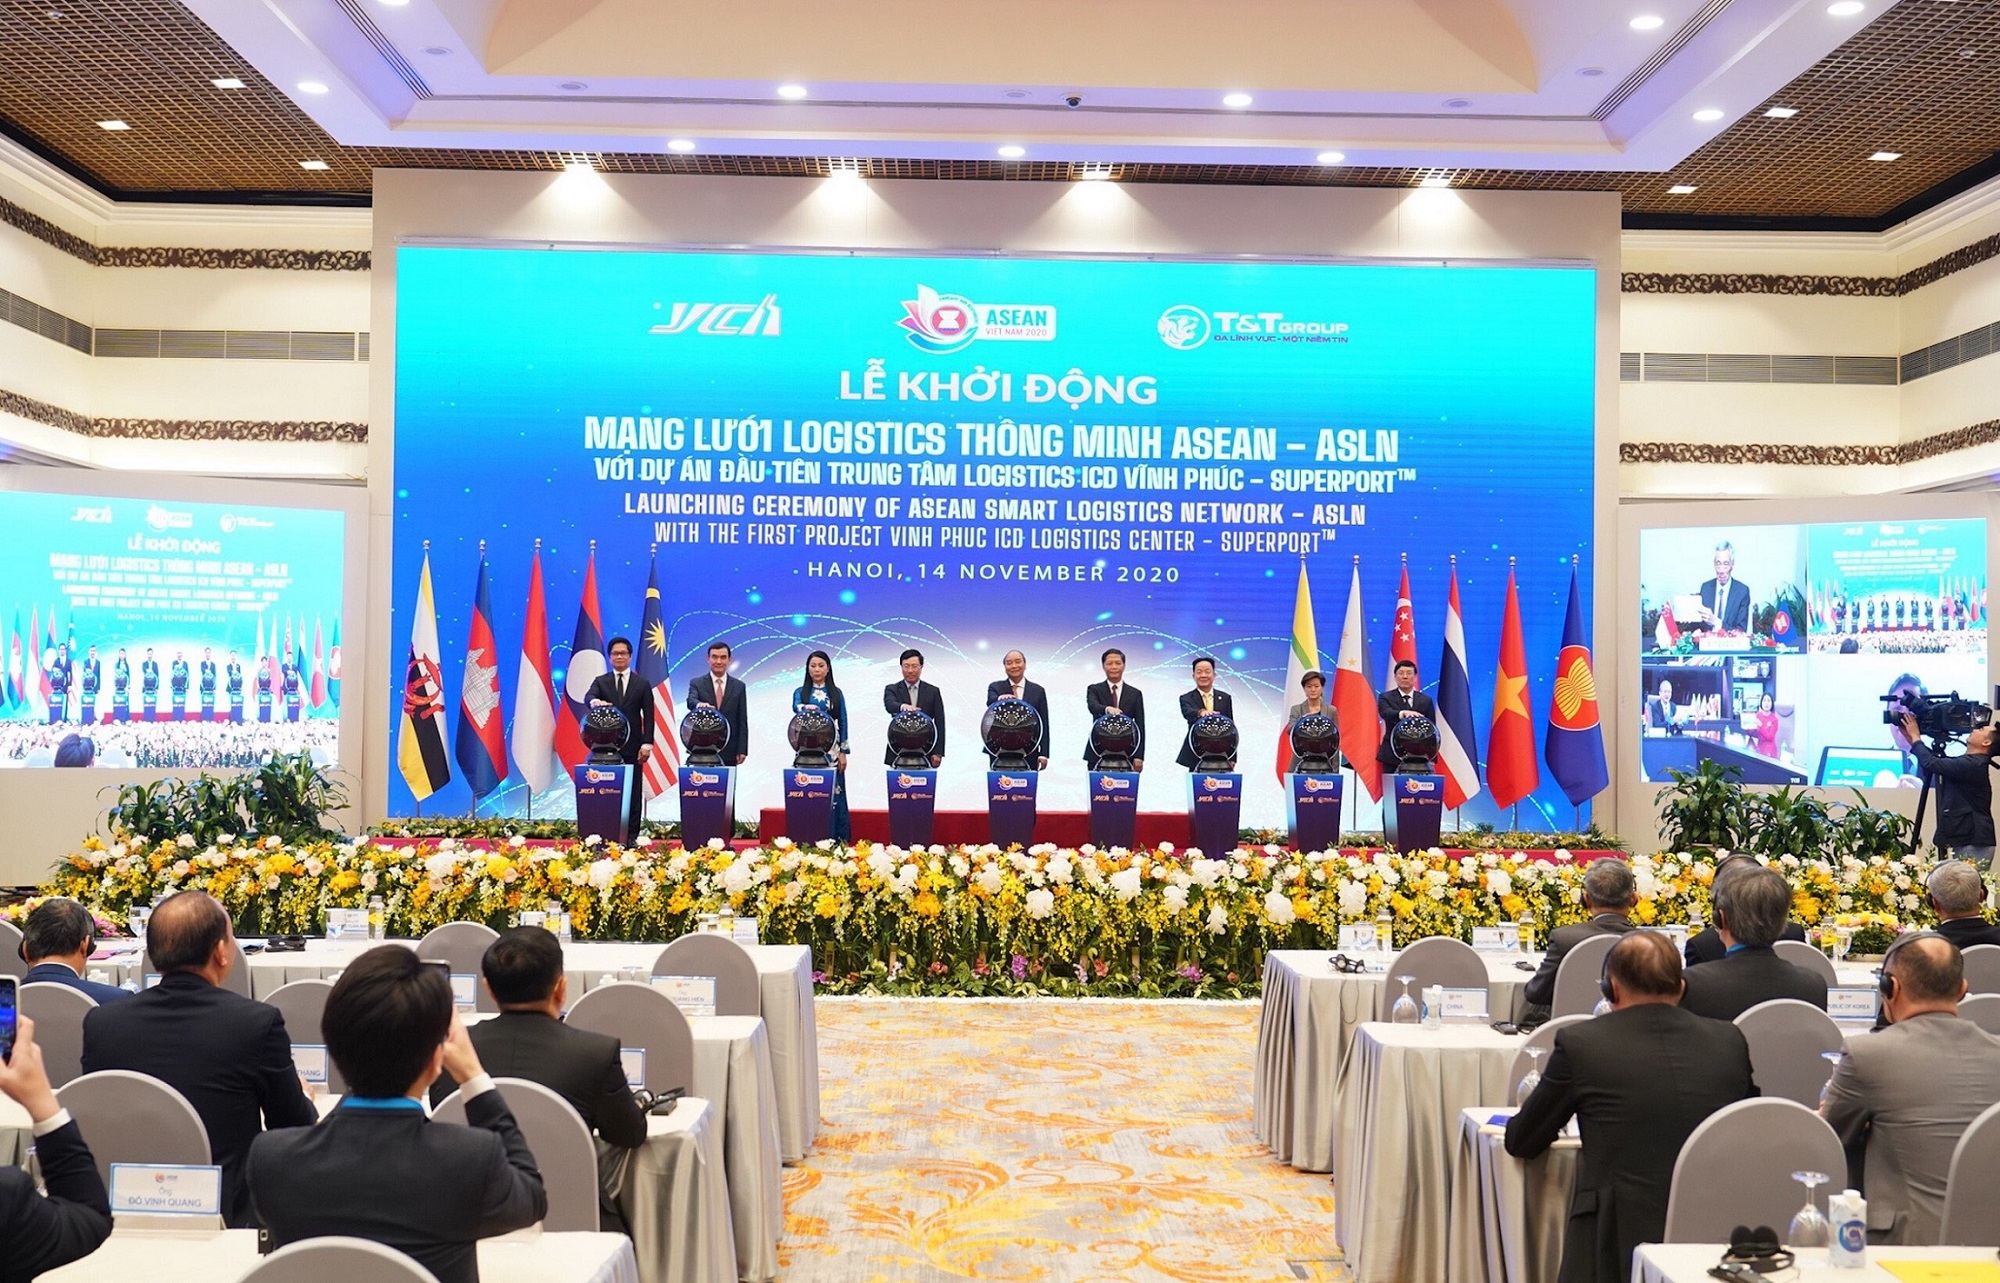 T&T Group khởi động mạng lưới logistics thông minh ASEAN 